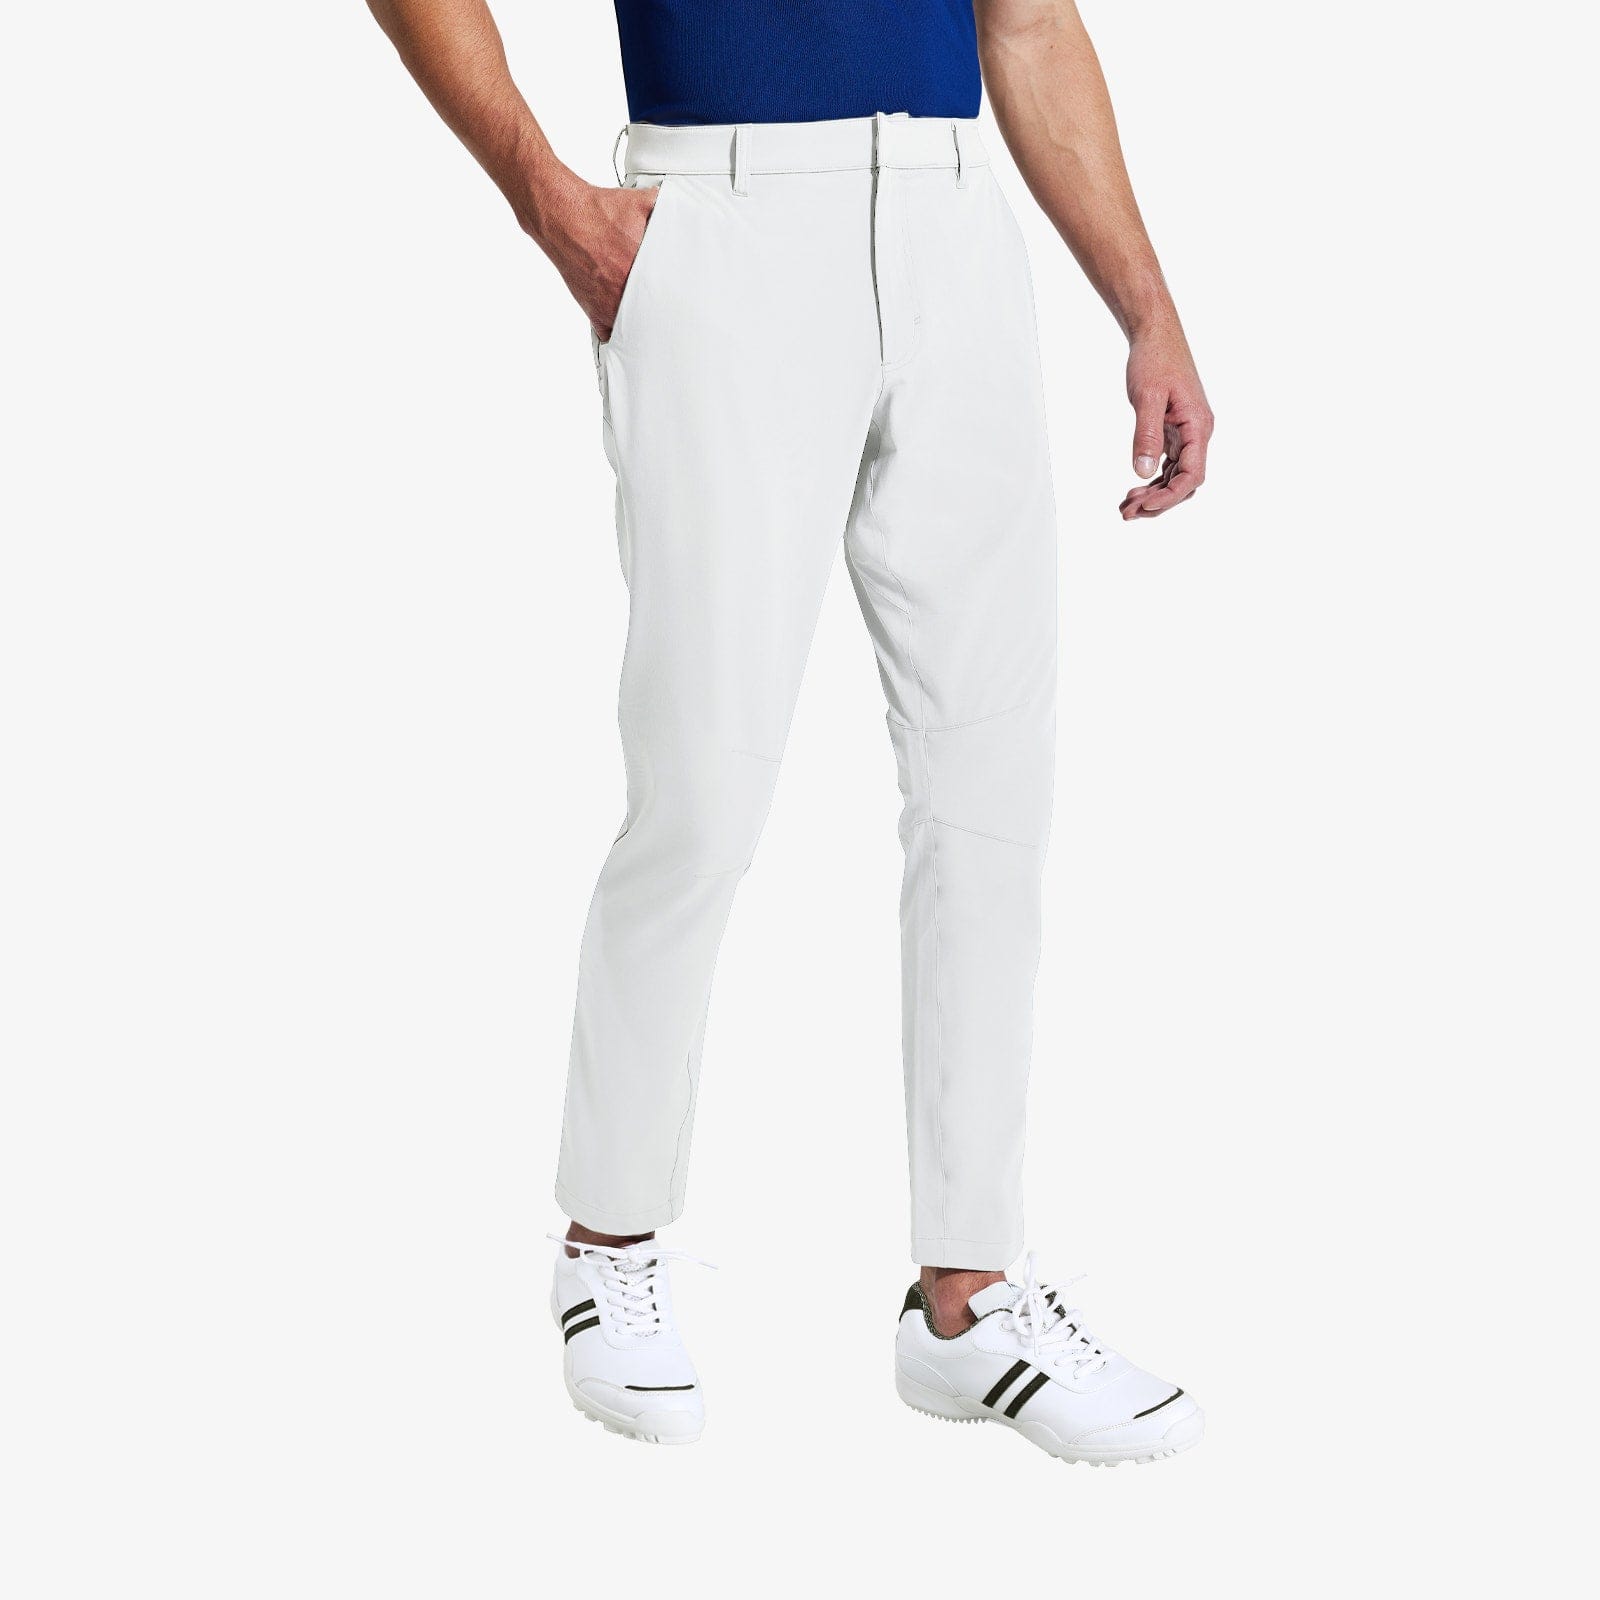 MIER Men's Stretch Golf Pants Slim Fit Quick Dry Pants